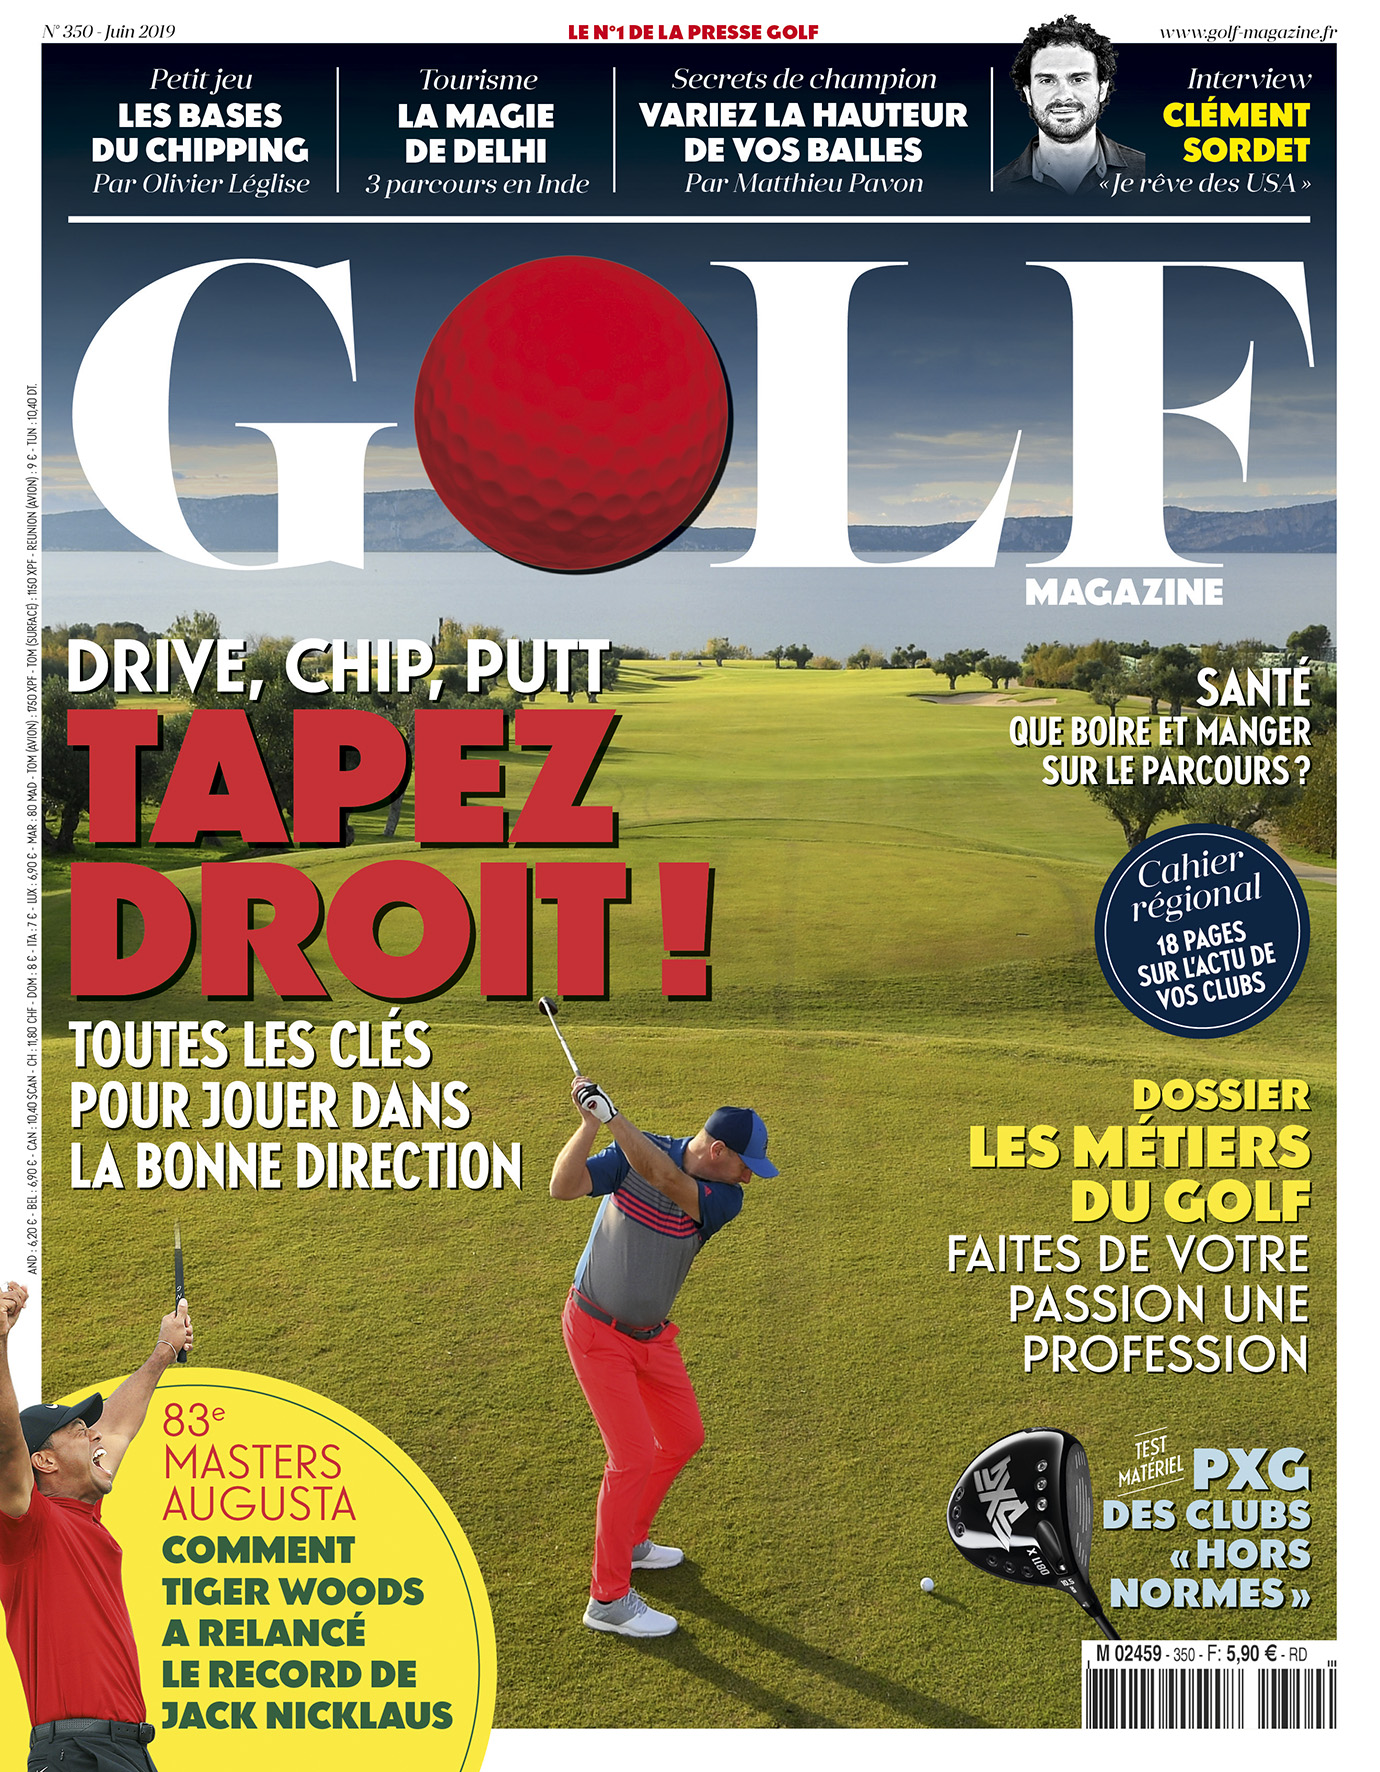 Le Golf Magazine n°350 est en kiosque